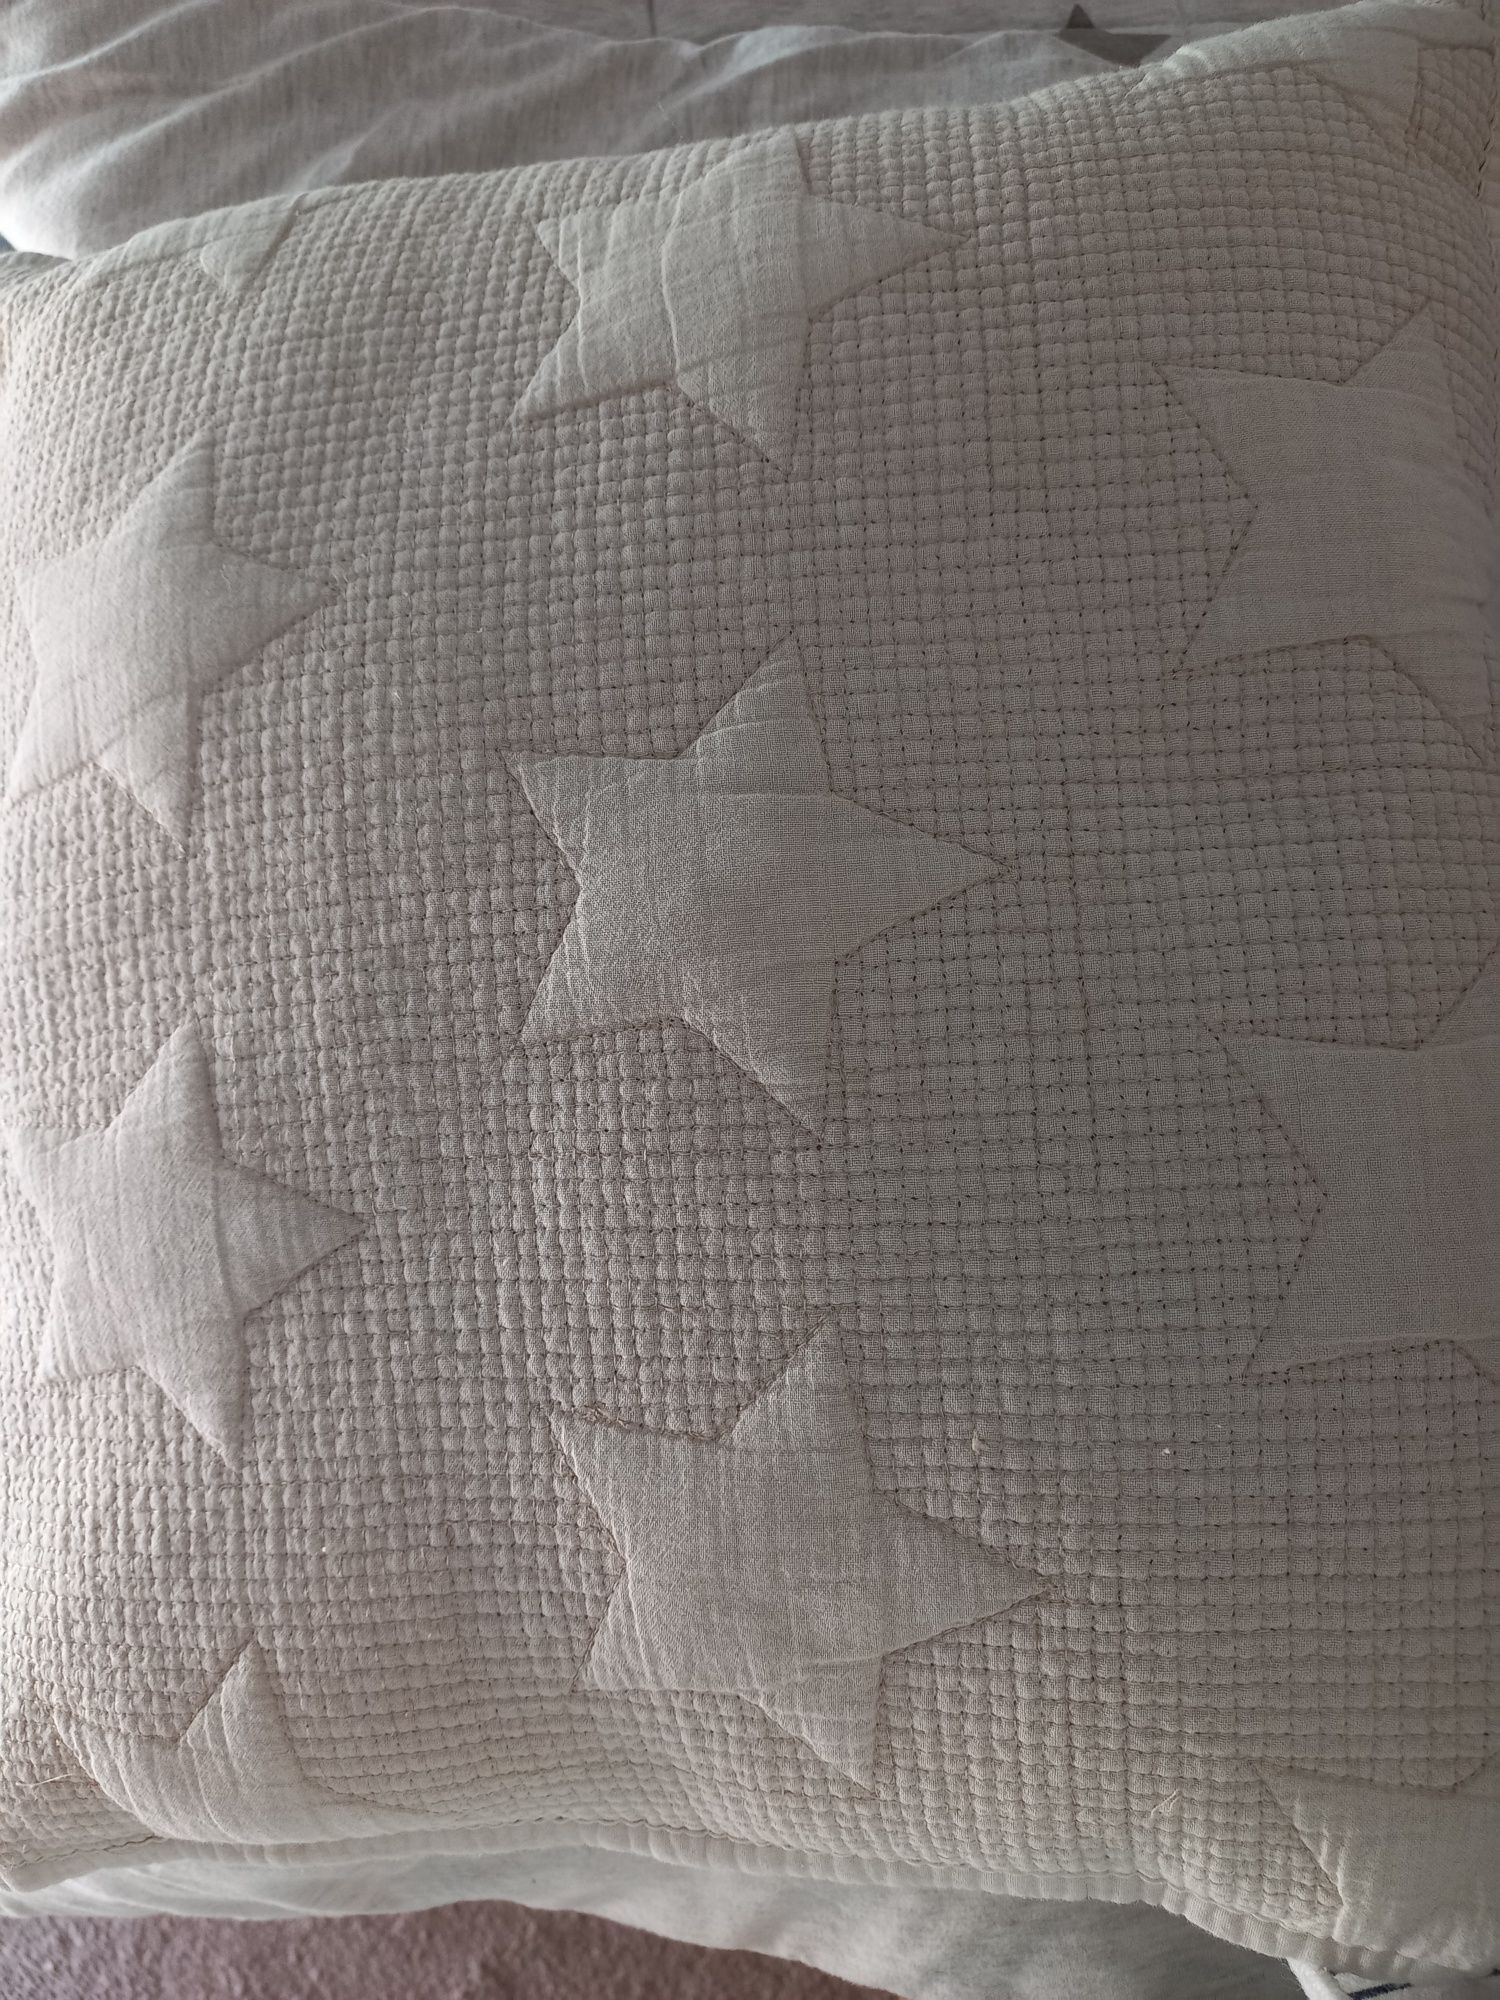 Colcha alchoada com estrelas beje cama colchão 1.50,cm